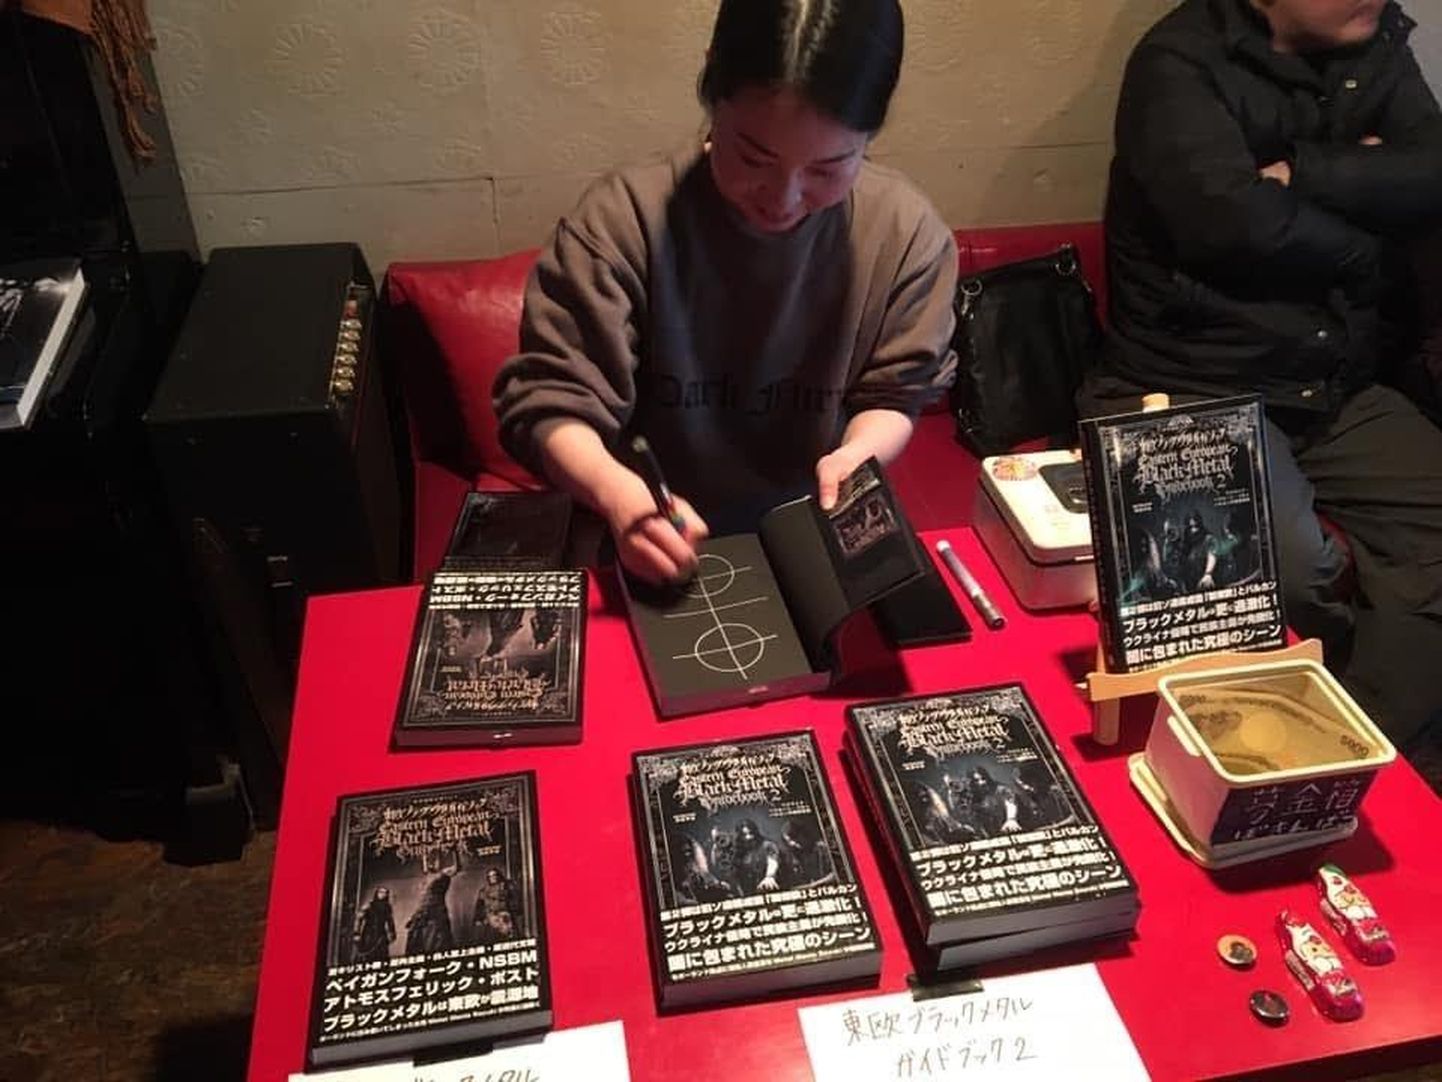 Sayuki Okada on põhjalikult ette võtnud Ida-Euroopa black metali kaardistamise ja andnud nüüdseks välja juba kaks põhjalikku raamatut sarjast "Eastern European Black Metal Guidebook".